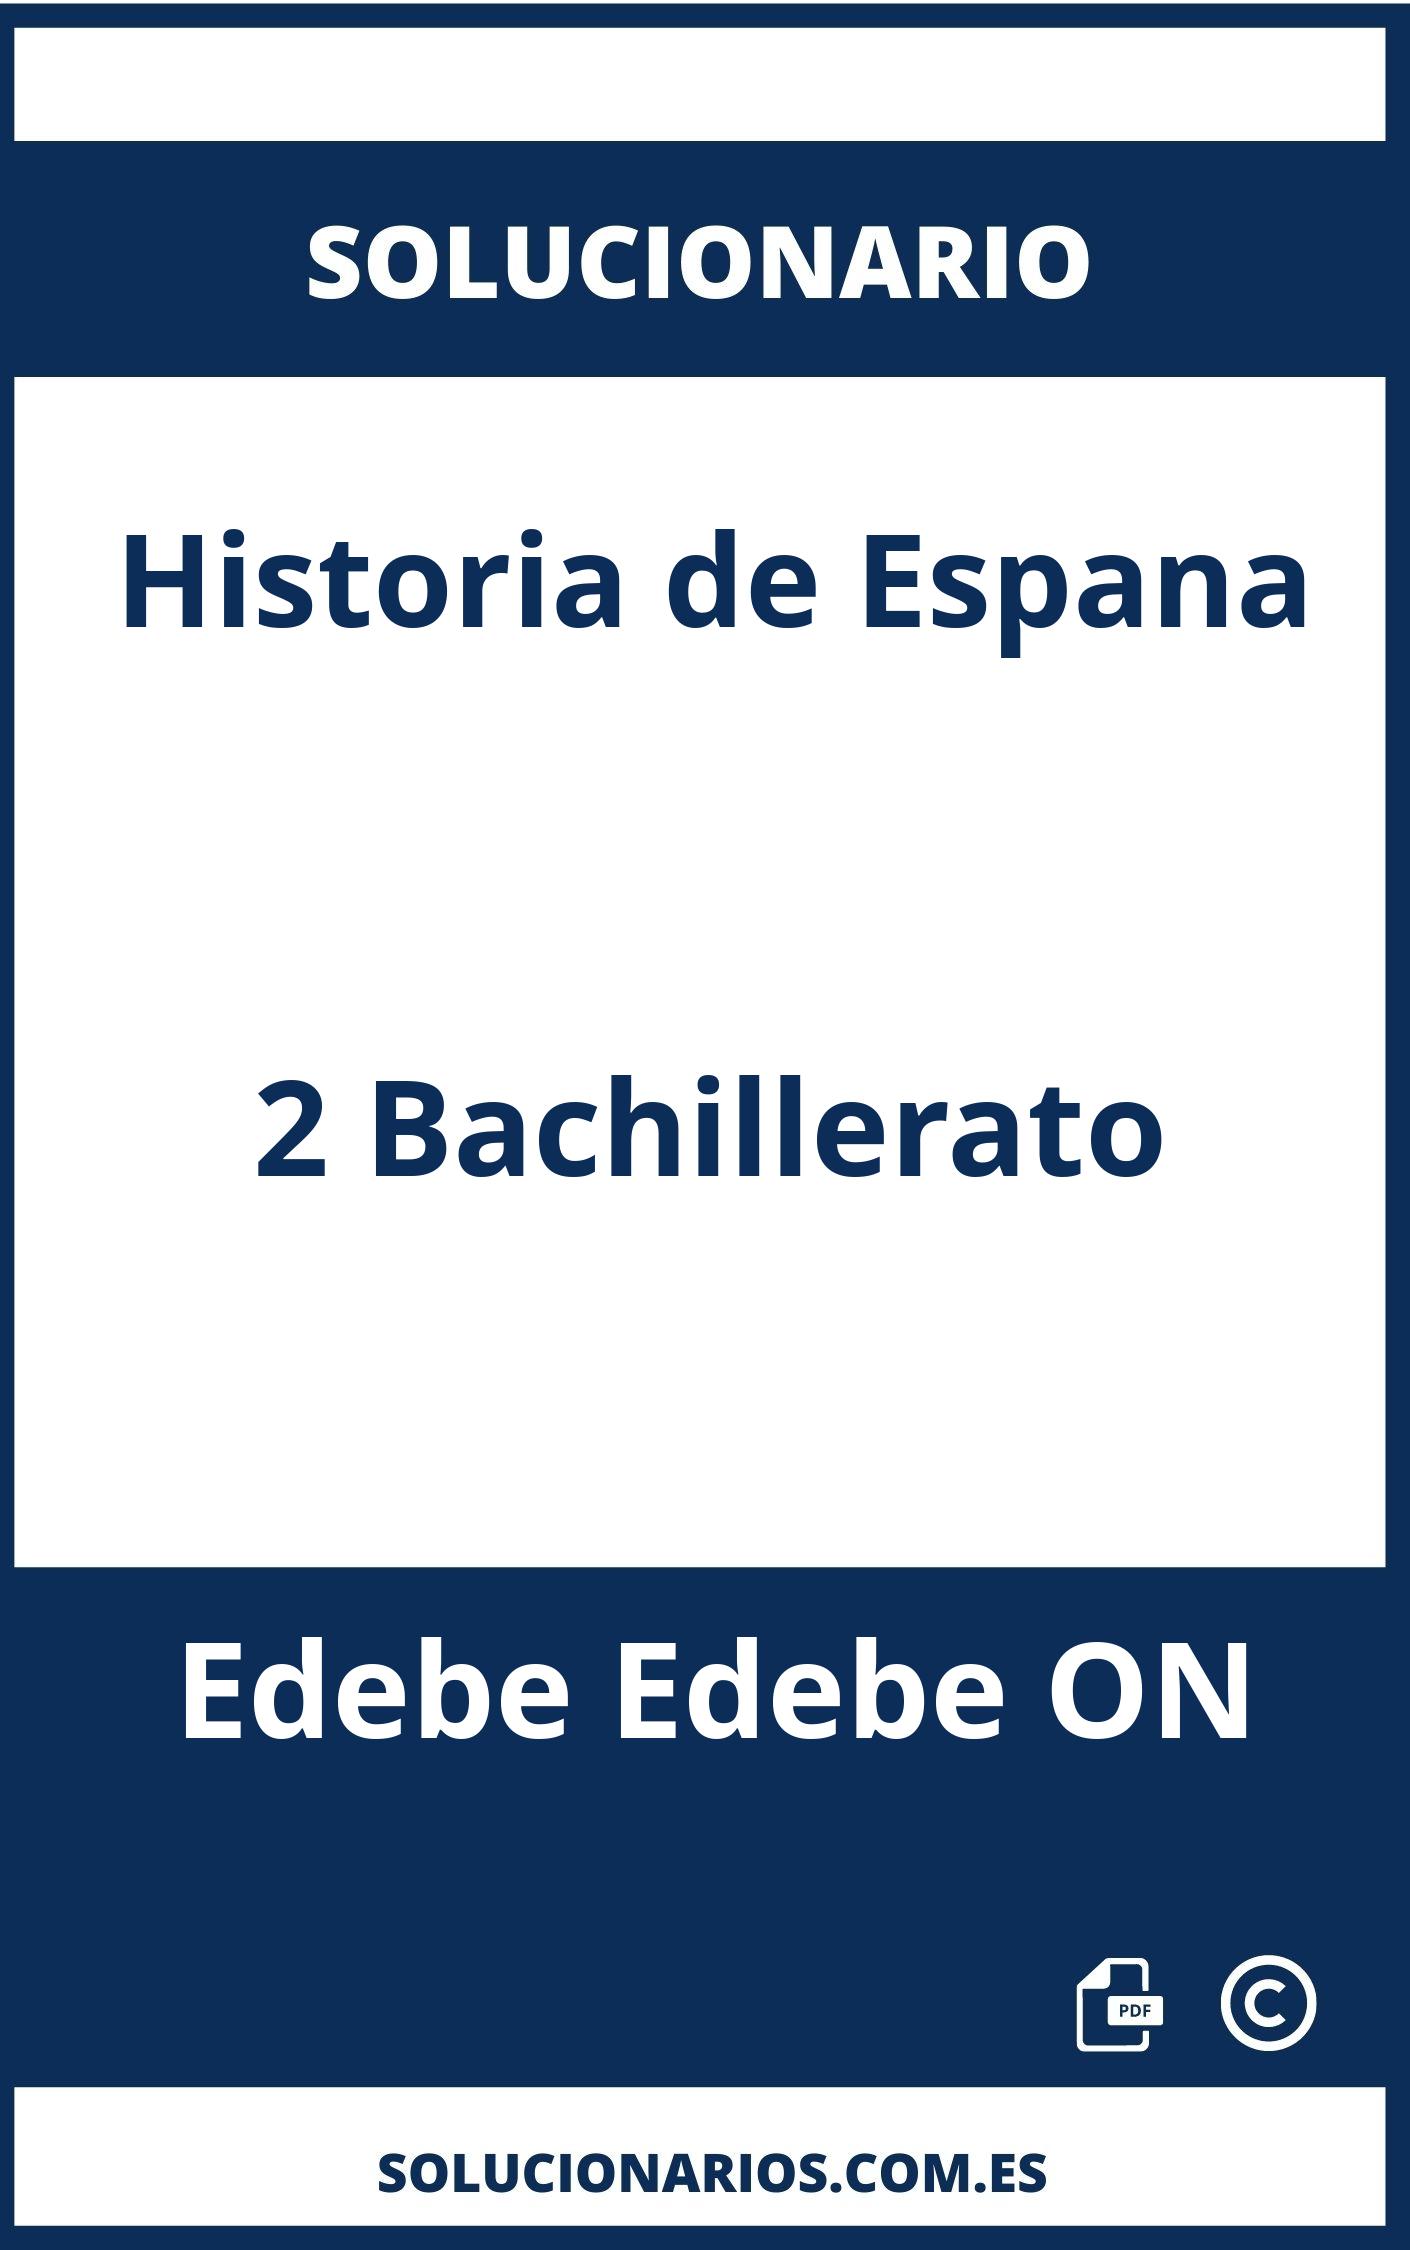 Solucionario Historia de Espana 2 Bachillerato Edebe Edebe ON